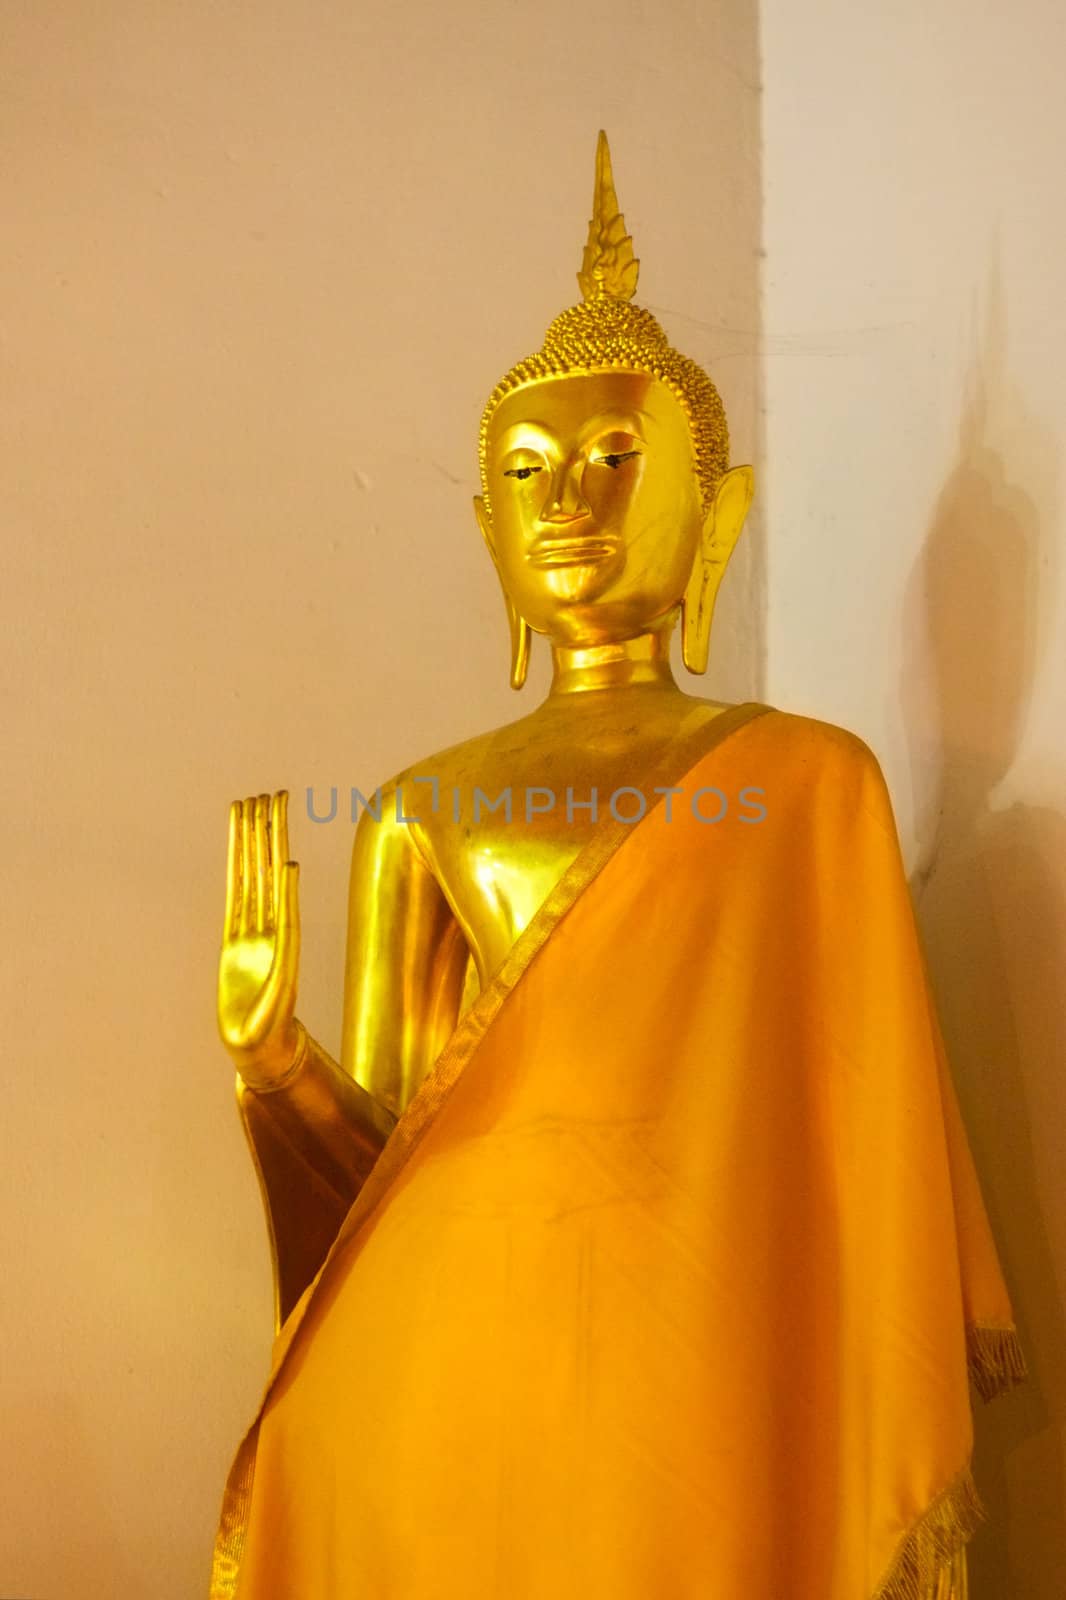 Statue in Wat Po by petr_malyshev